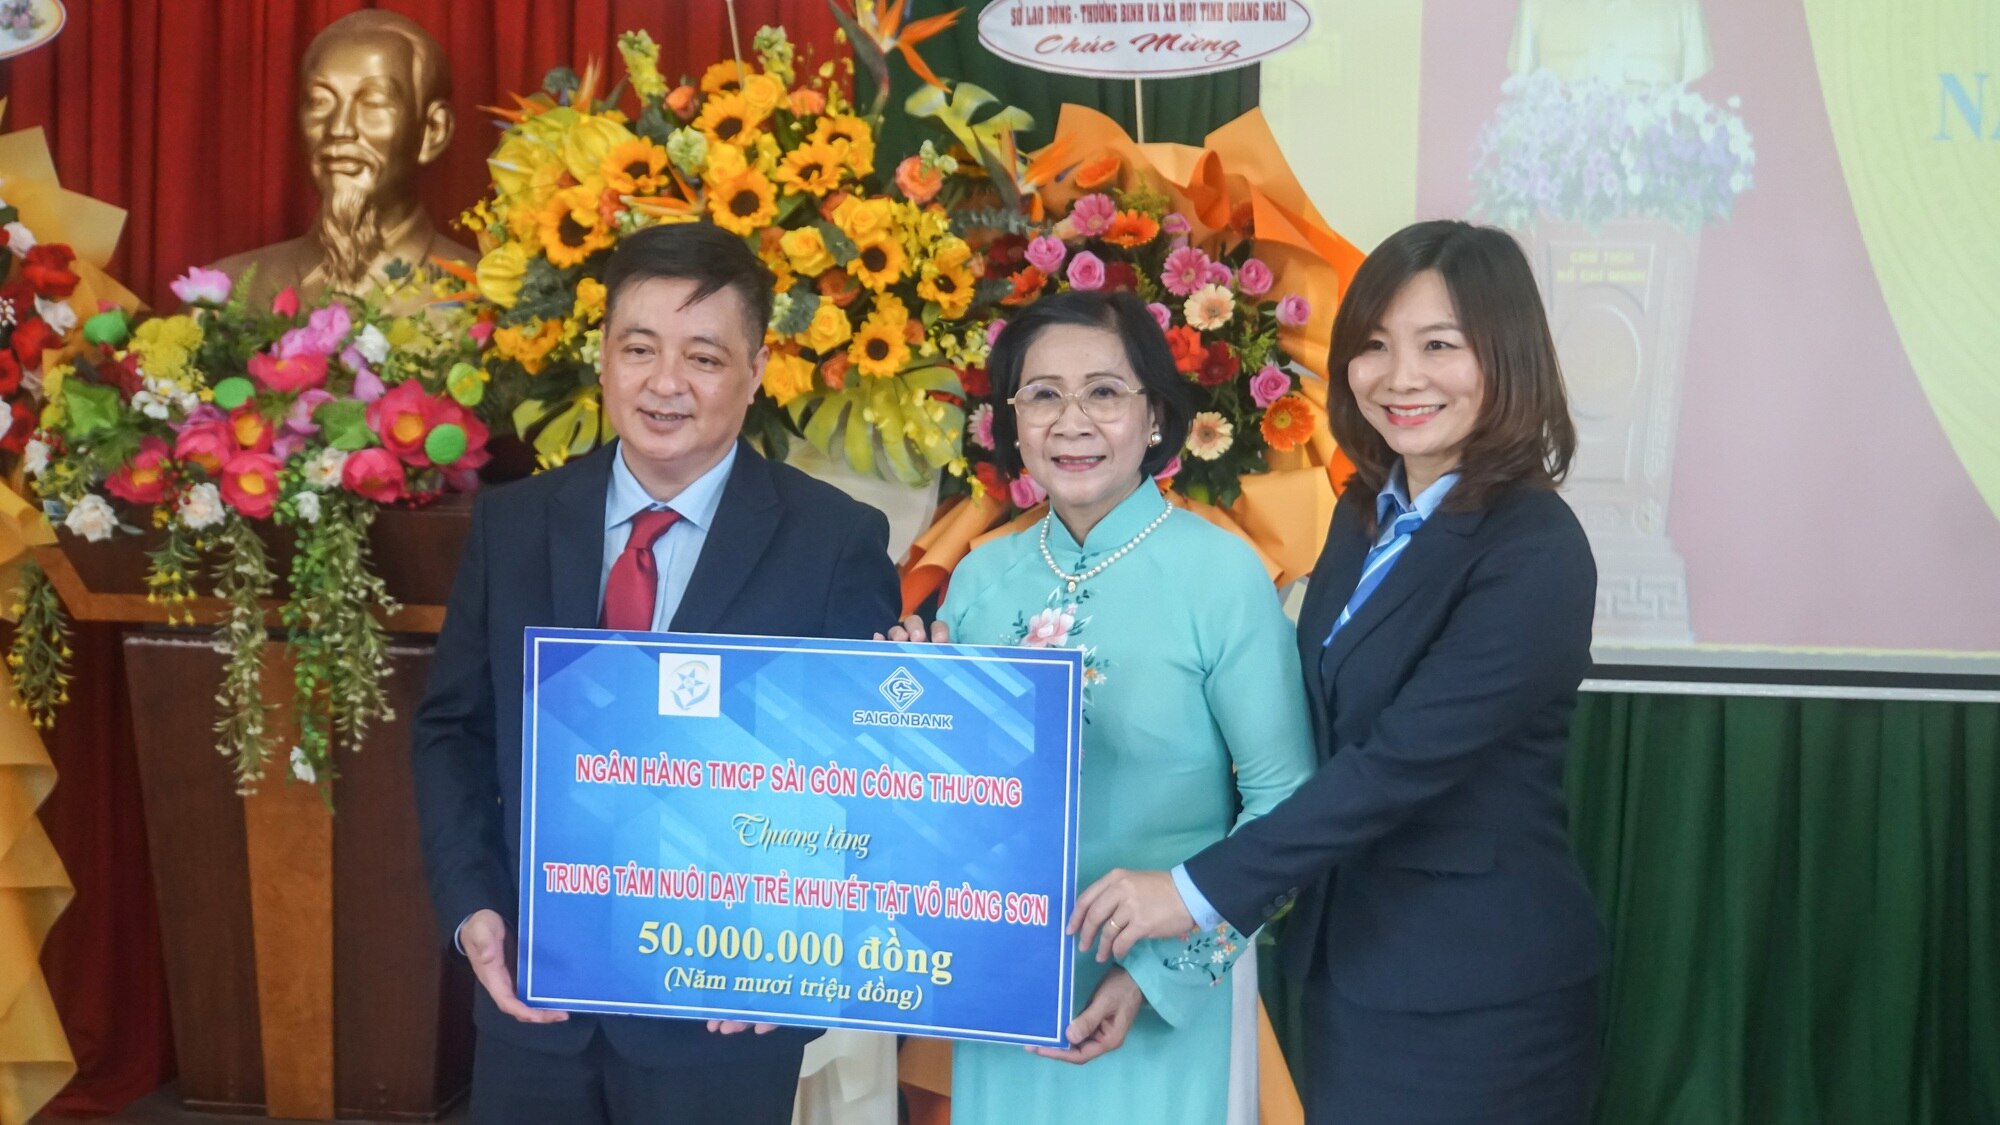 Hỗ trợ Trung tâm nuôi dạy trẻ khuyết tật Võ Hồng Sơn 1,5 tỉ đồng - Ảnh 7.